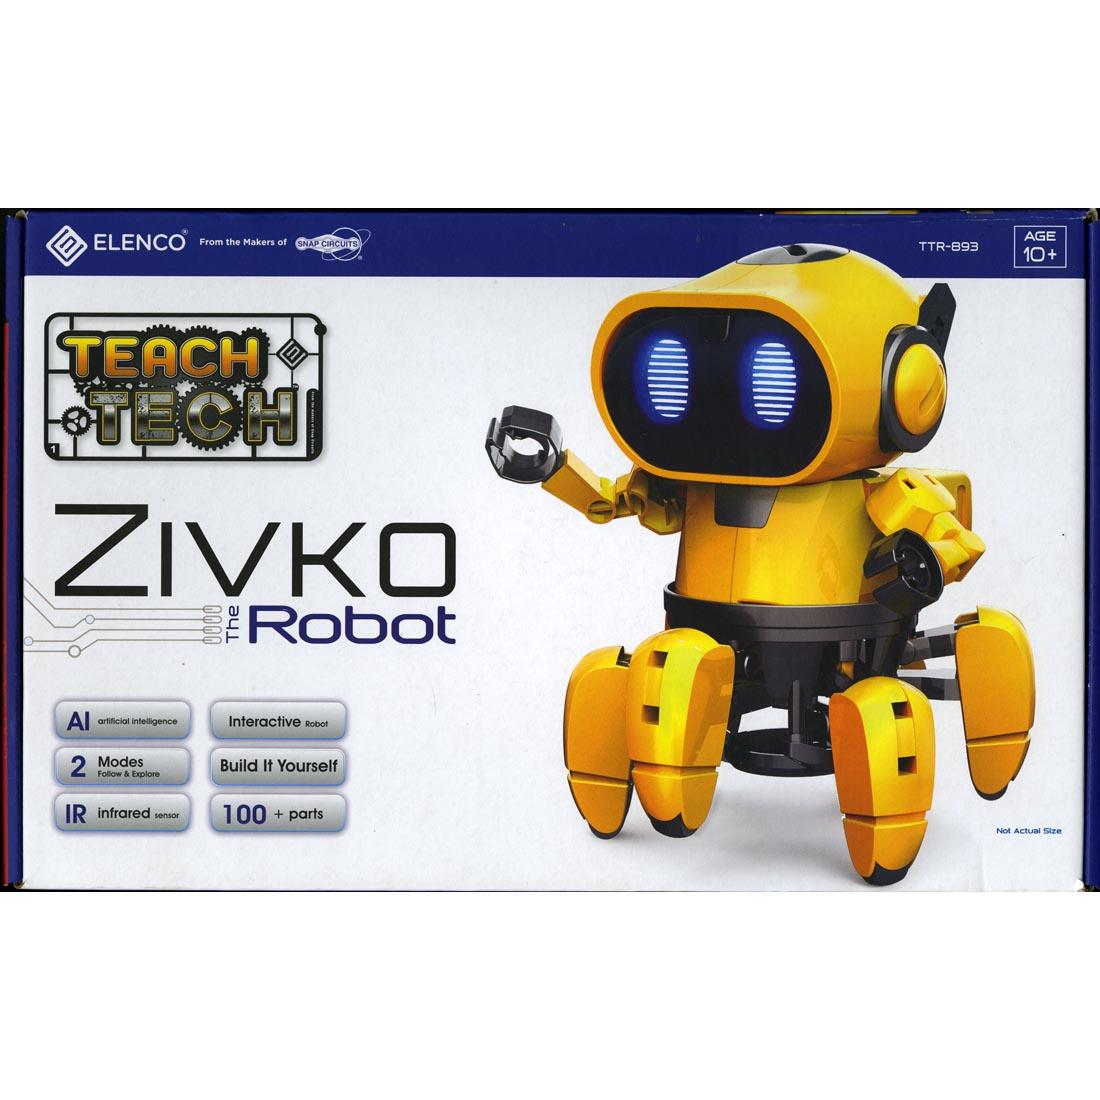 Zivko The Robot